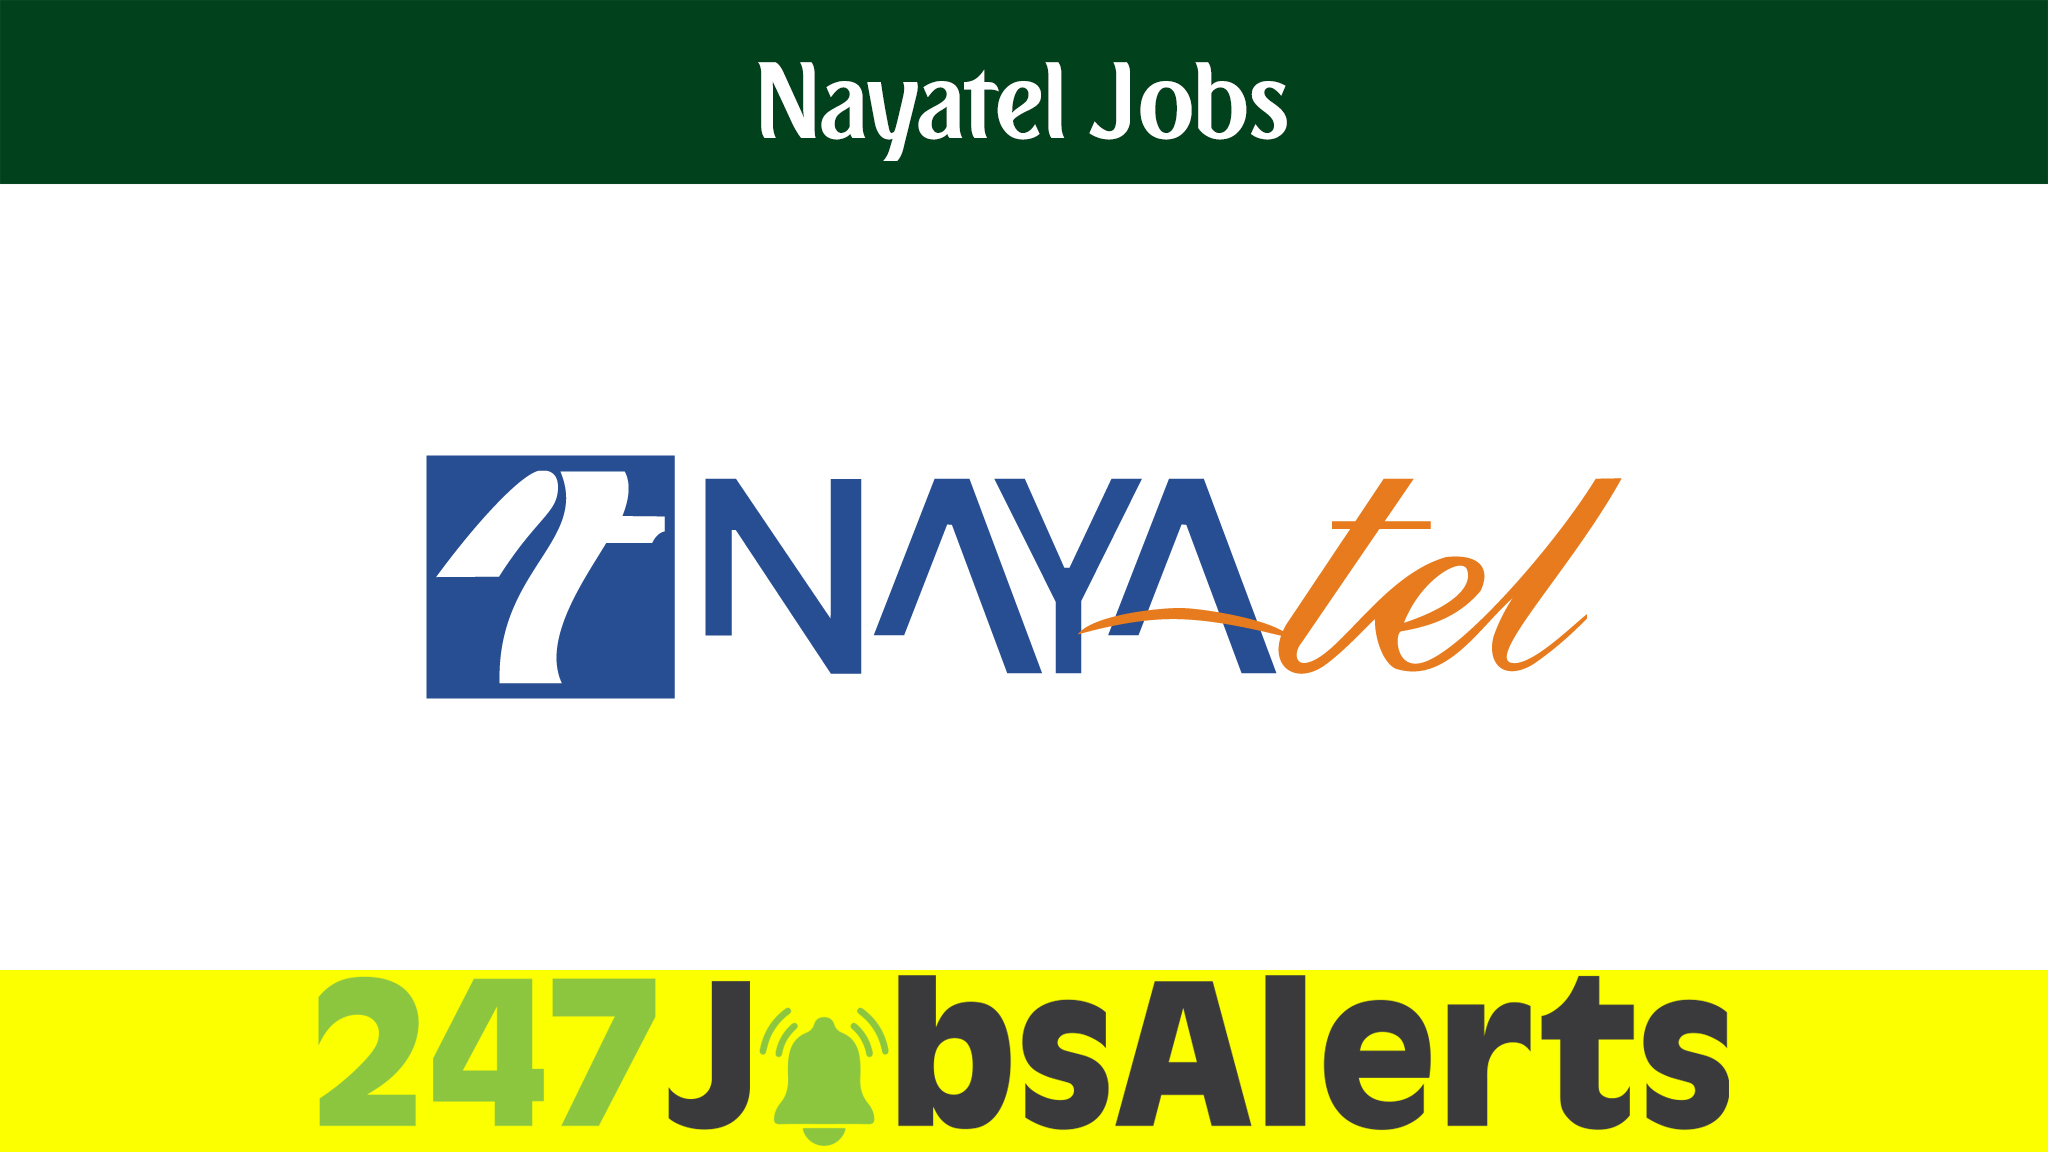 Nayatel Jobs